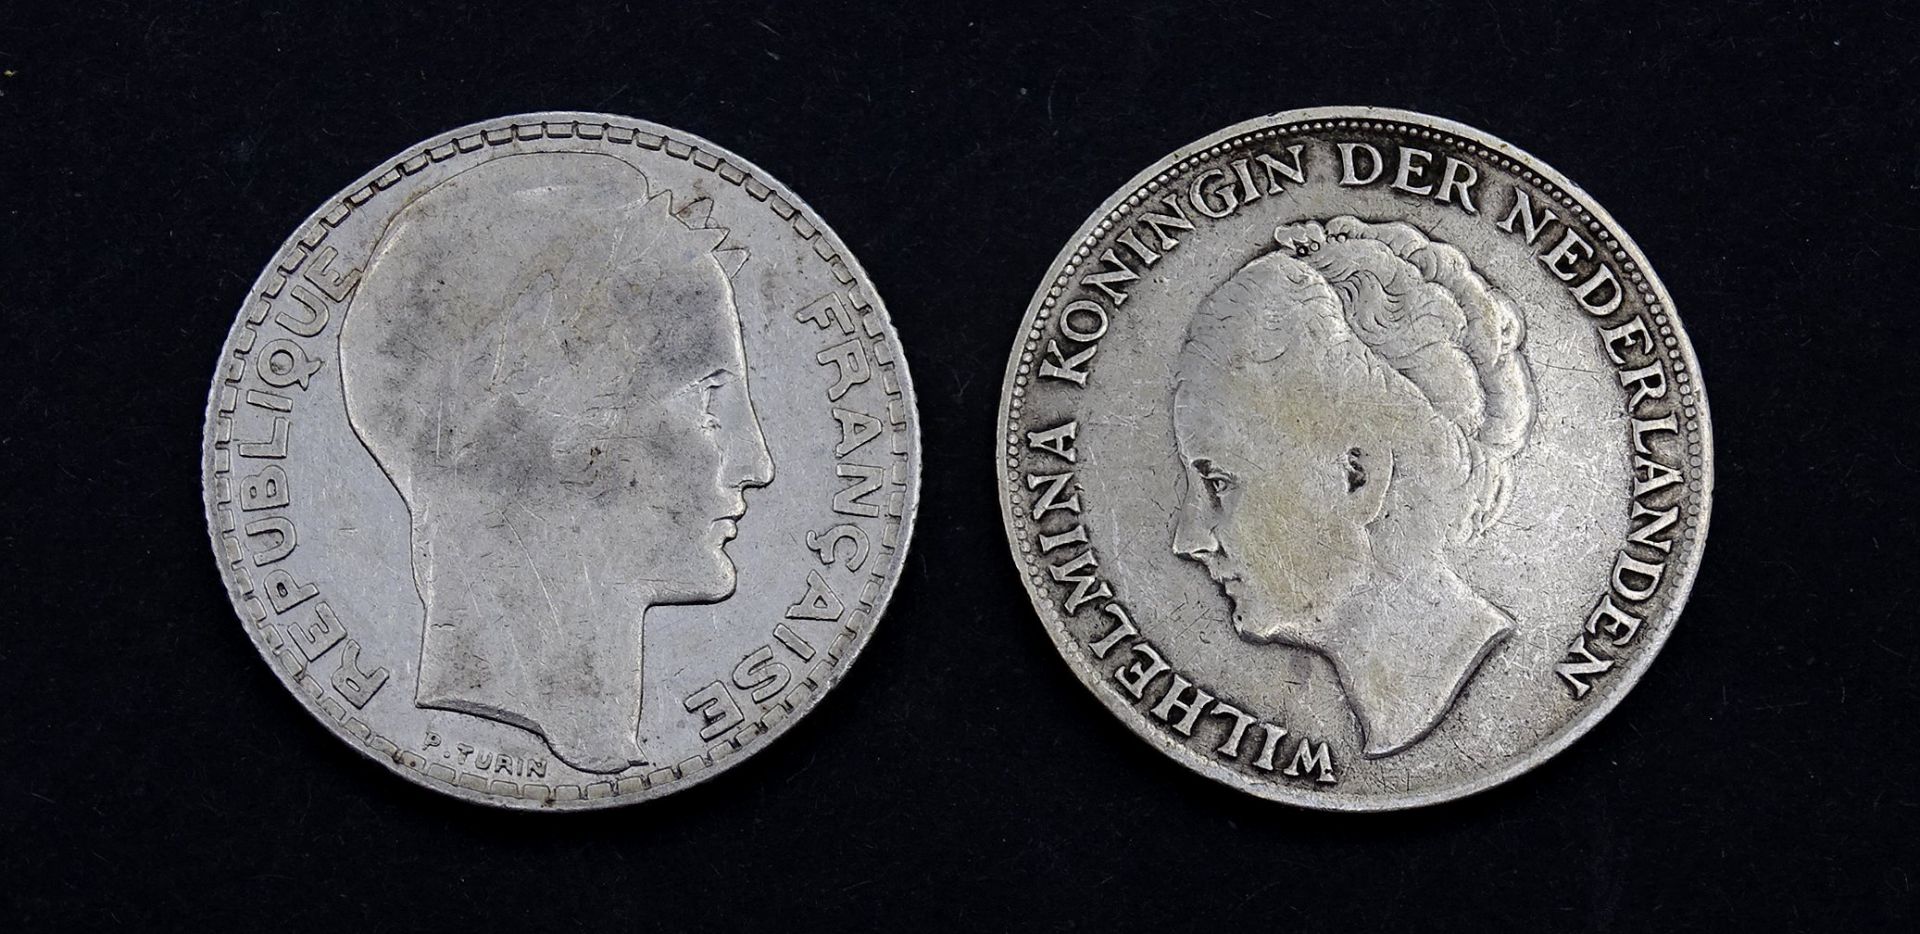 Zwei Silber Münzen, 10 Francs 1932 / 1 Gulden Curacao 1944 , zus. 19,7g. - Image 2 of 2